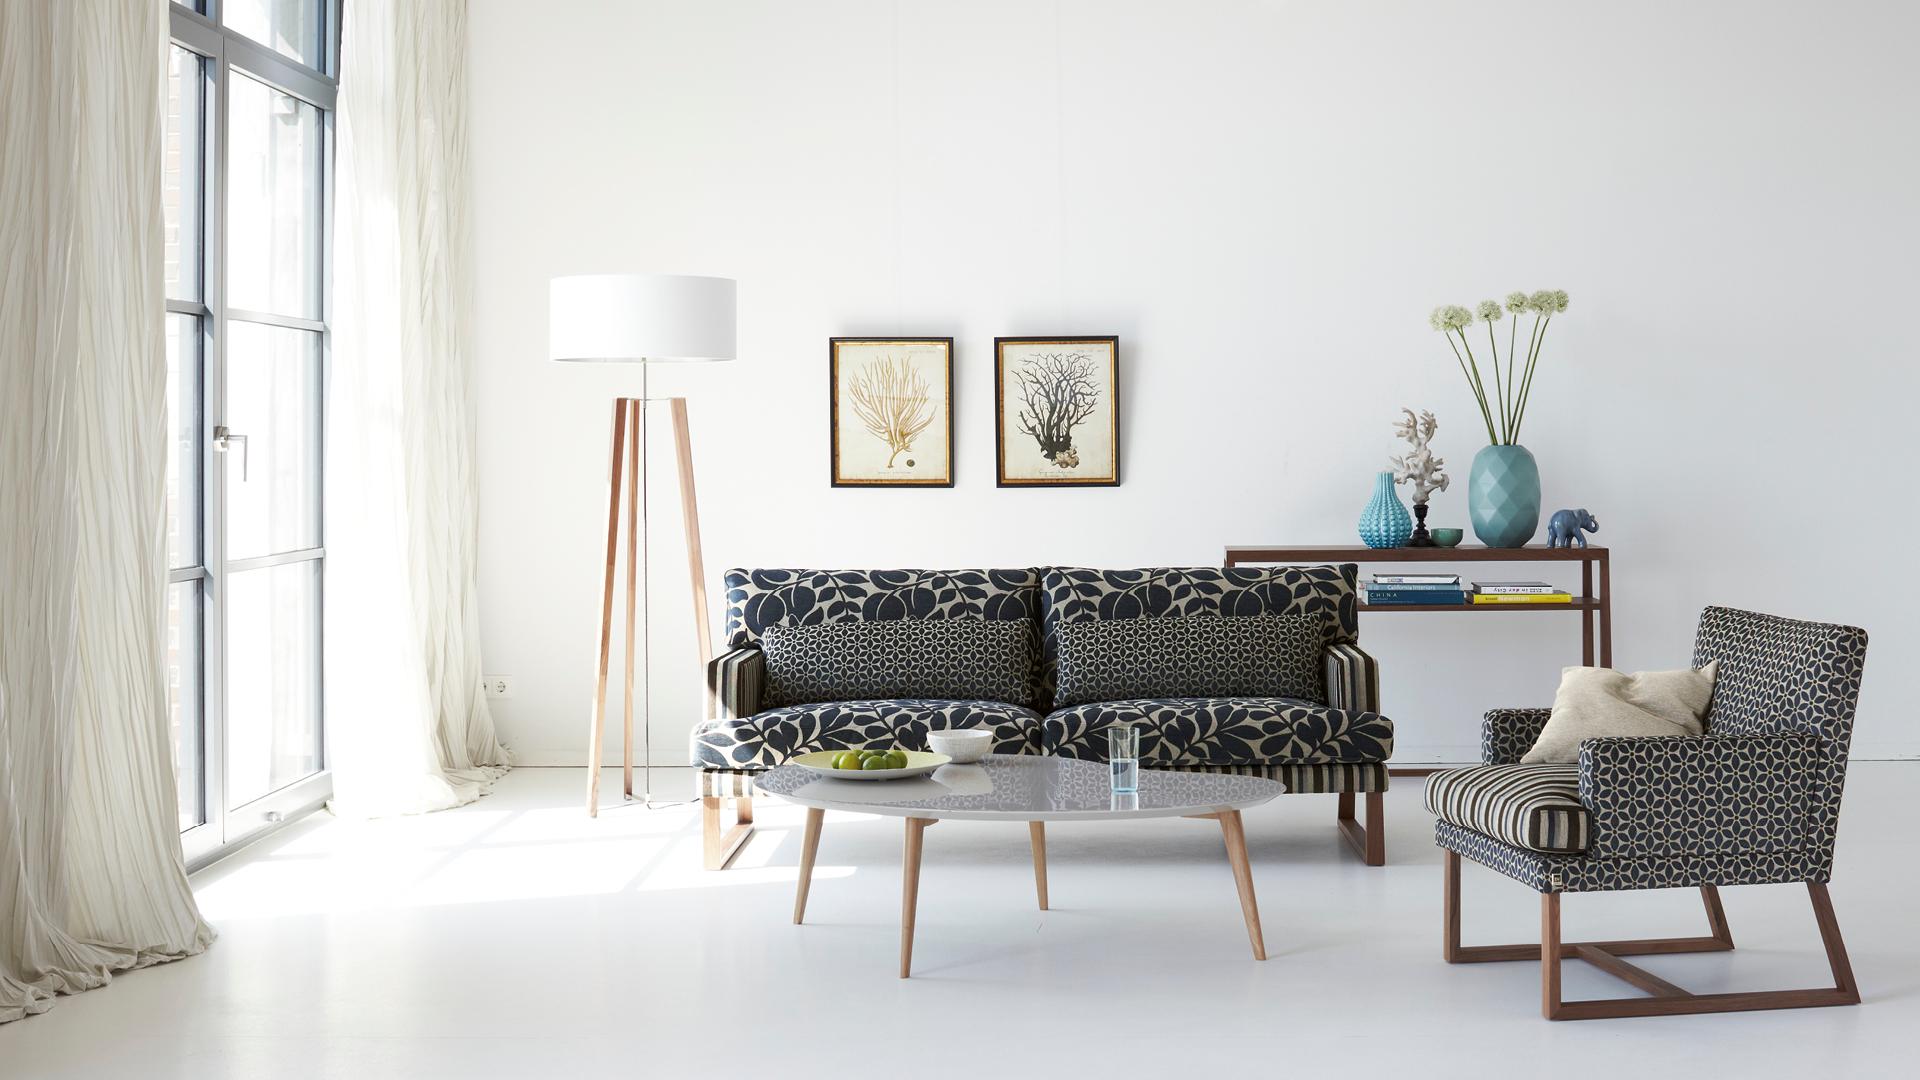 Aufregendes graues Sofa in puristischer Umgebung #puristisch #sofa ©JAB ANSTOETZ